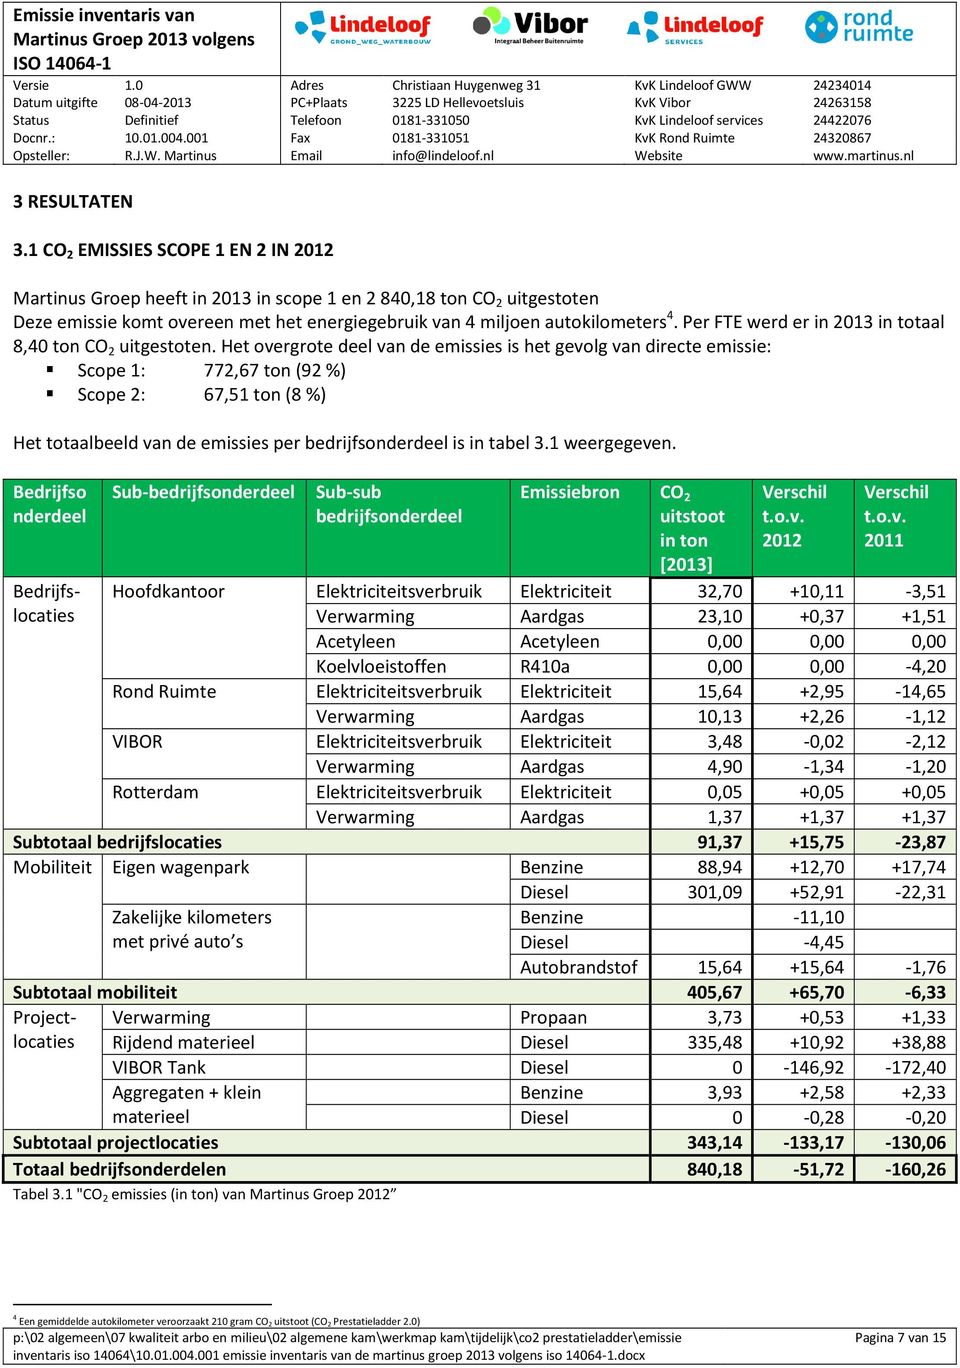 Per FTE werd er in 2013 in totaal 8,40 ton CO 2 uitgestoten.